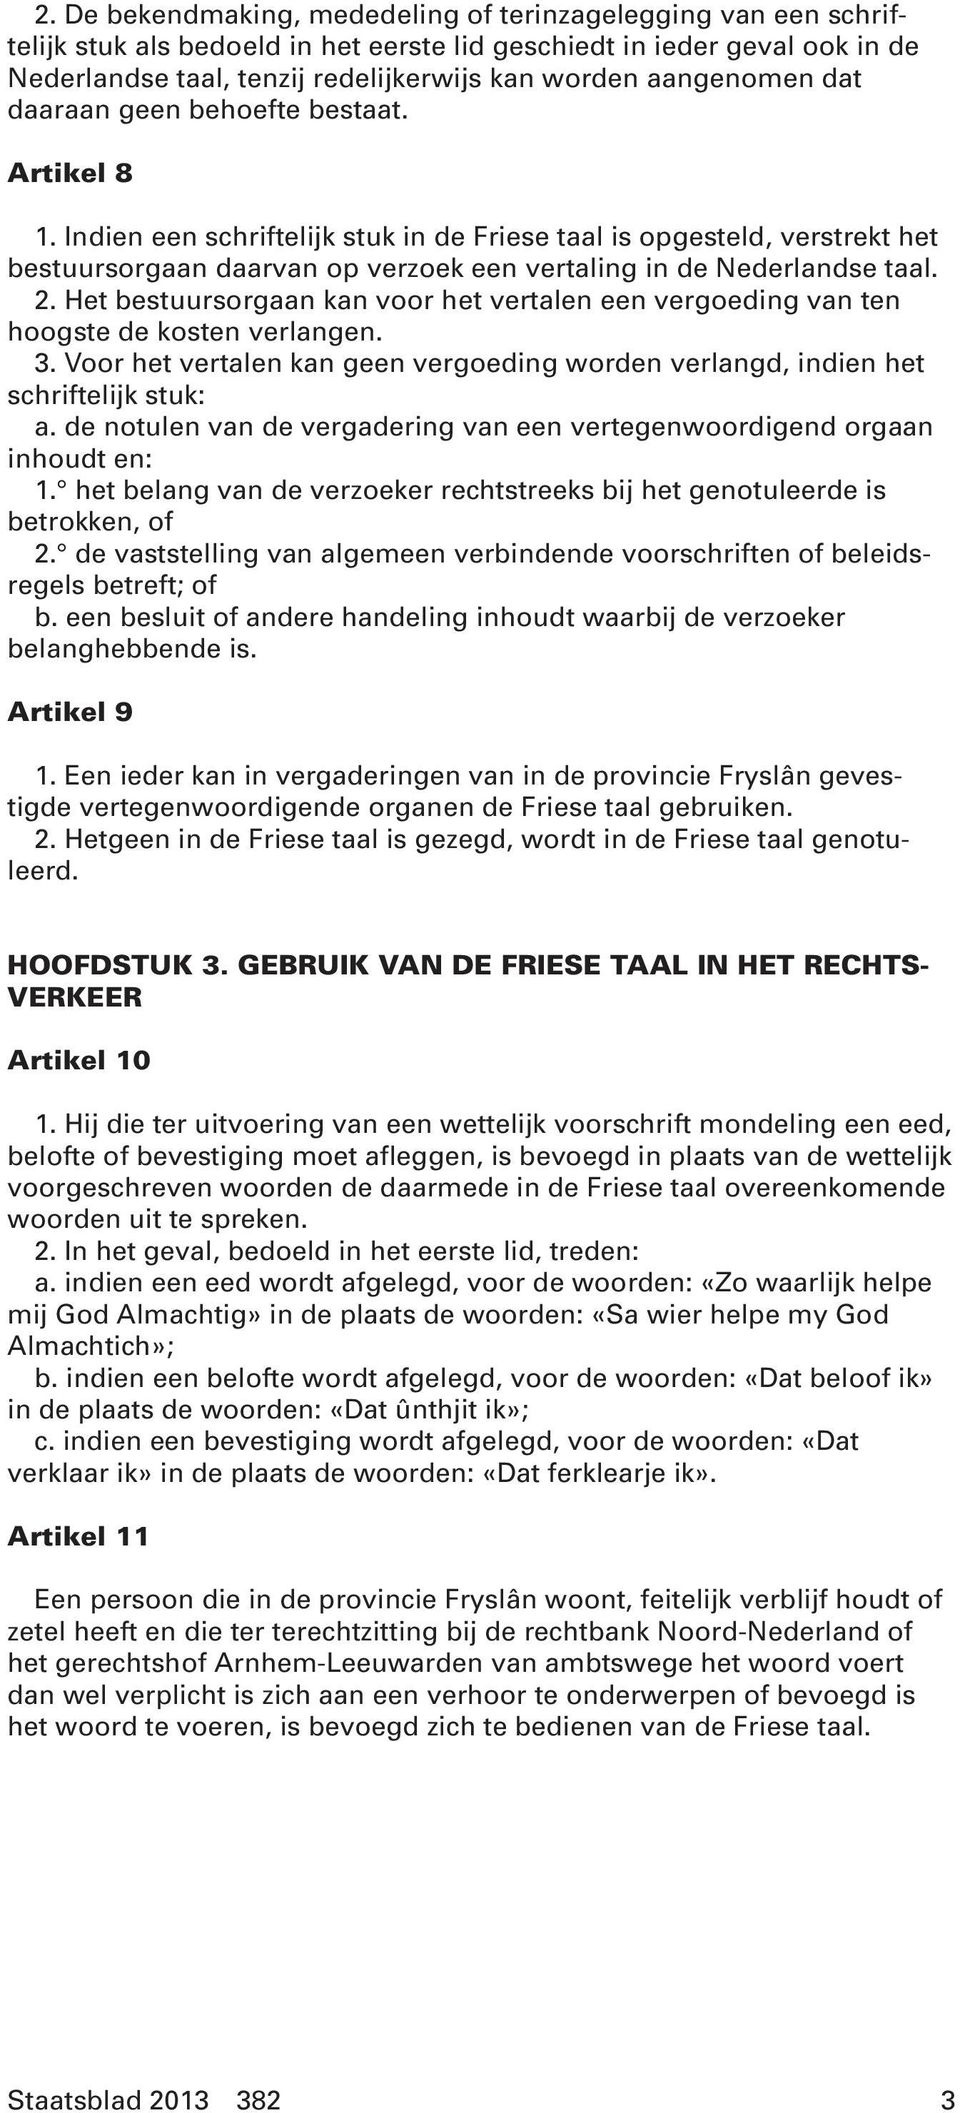 Indien een schriftelijk stuk in de Friese taal is opgesteld, verstrekt het bestuursorgaan daarvan op verzoek een vertaling in de Nederlandse taal. 2.